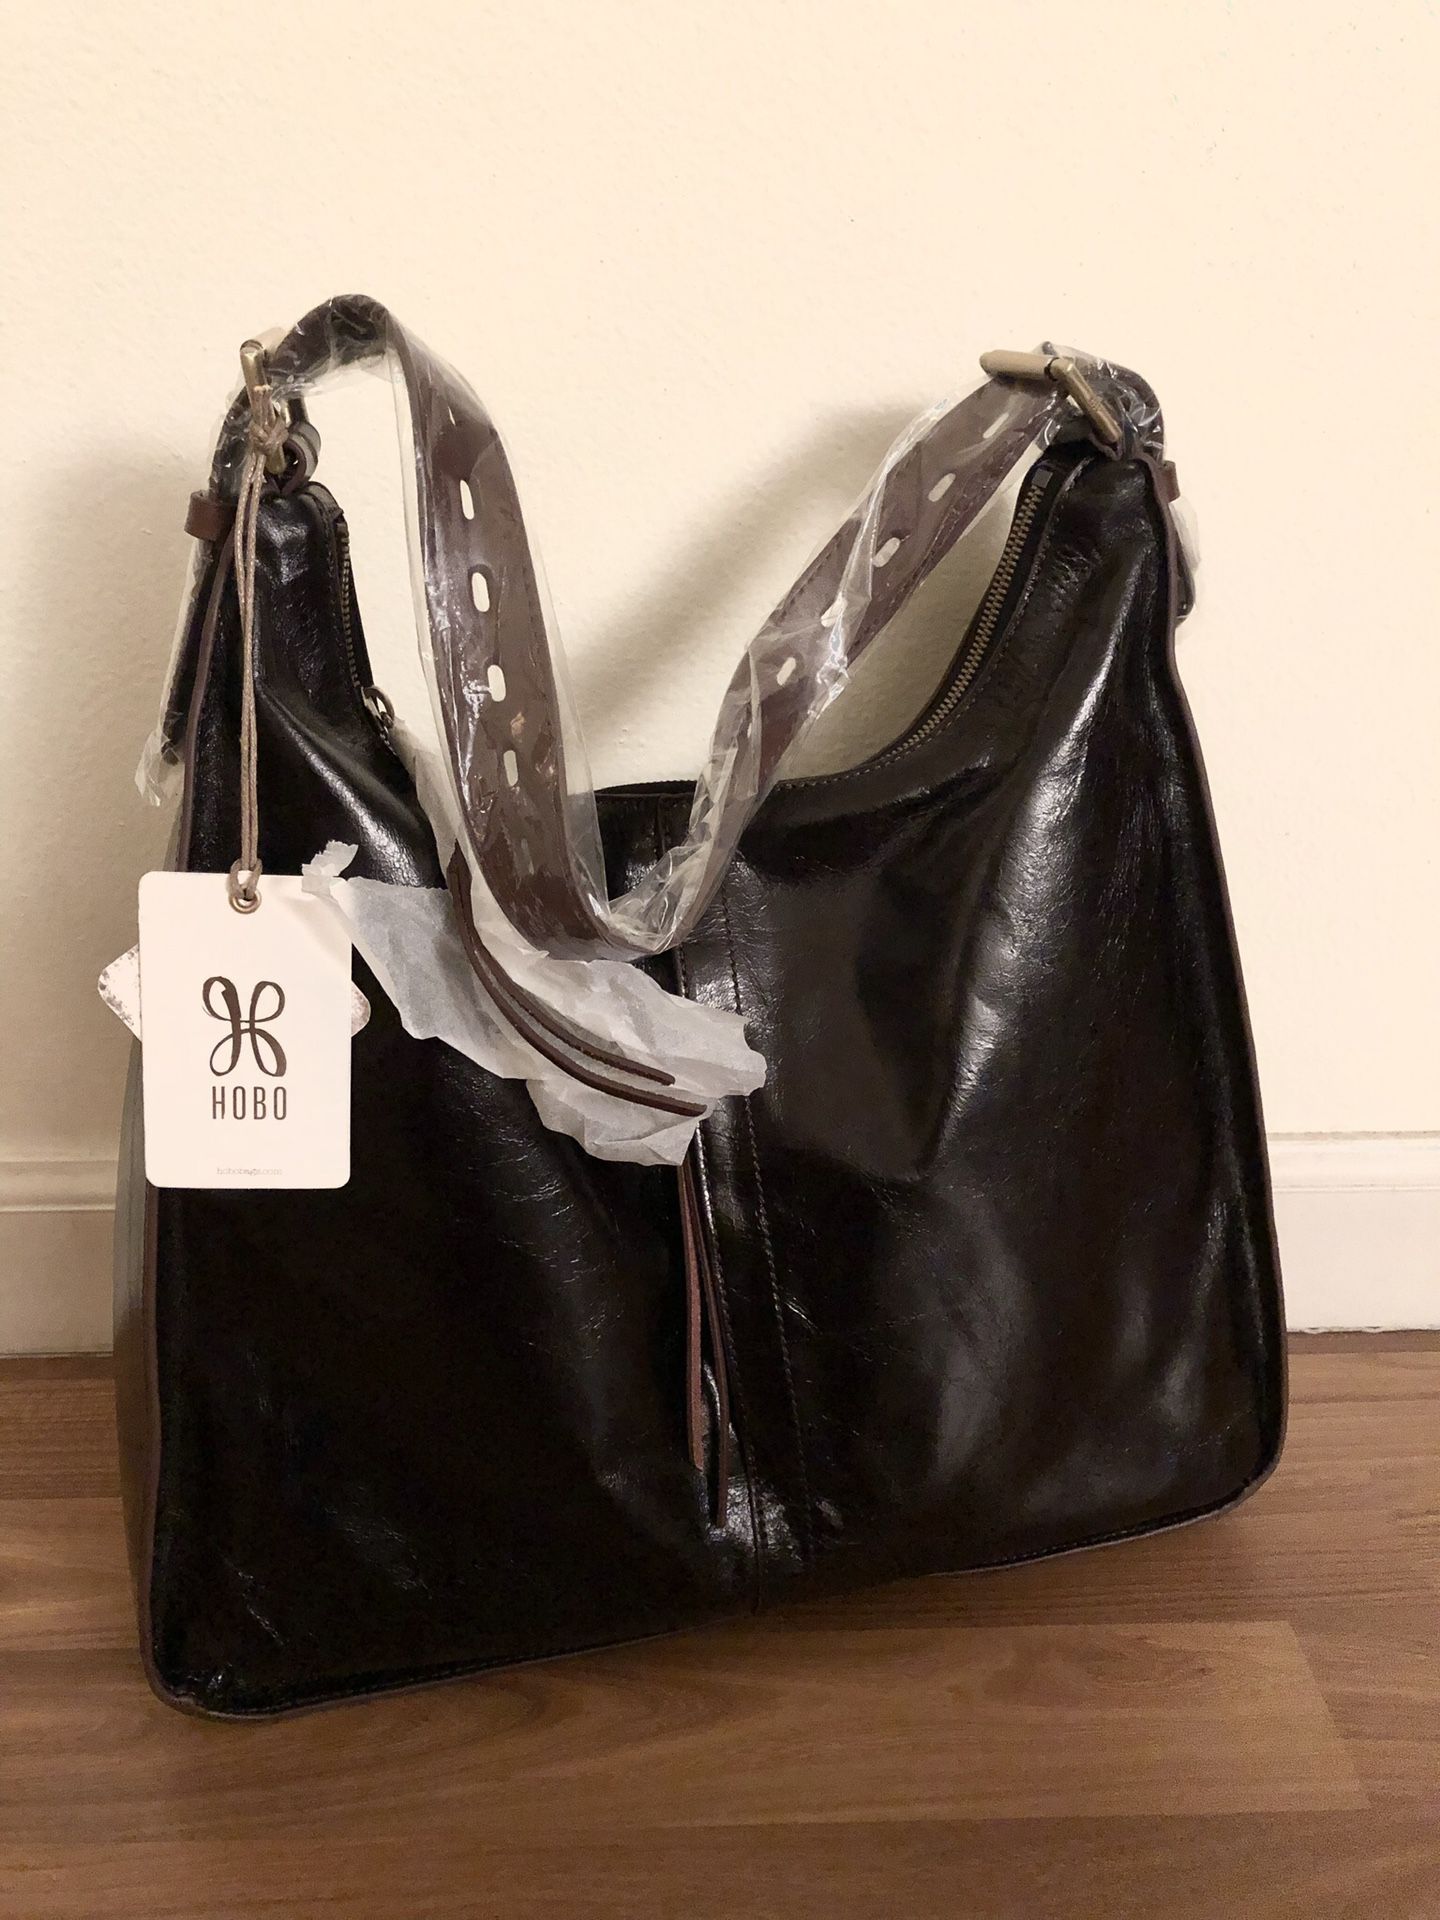 Hobo Original Black Leather Shoulder Bag Tote Handbag / Purse * NEW *